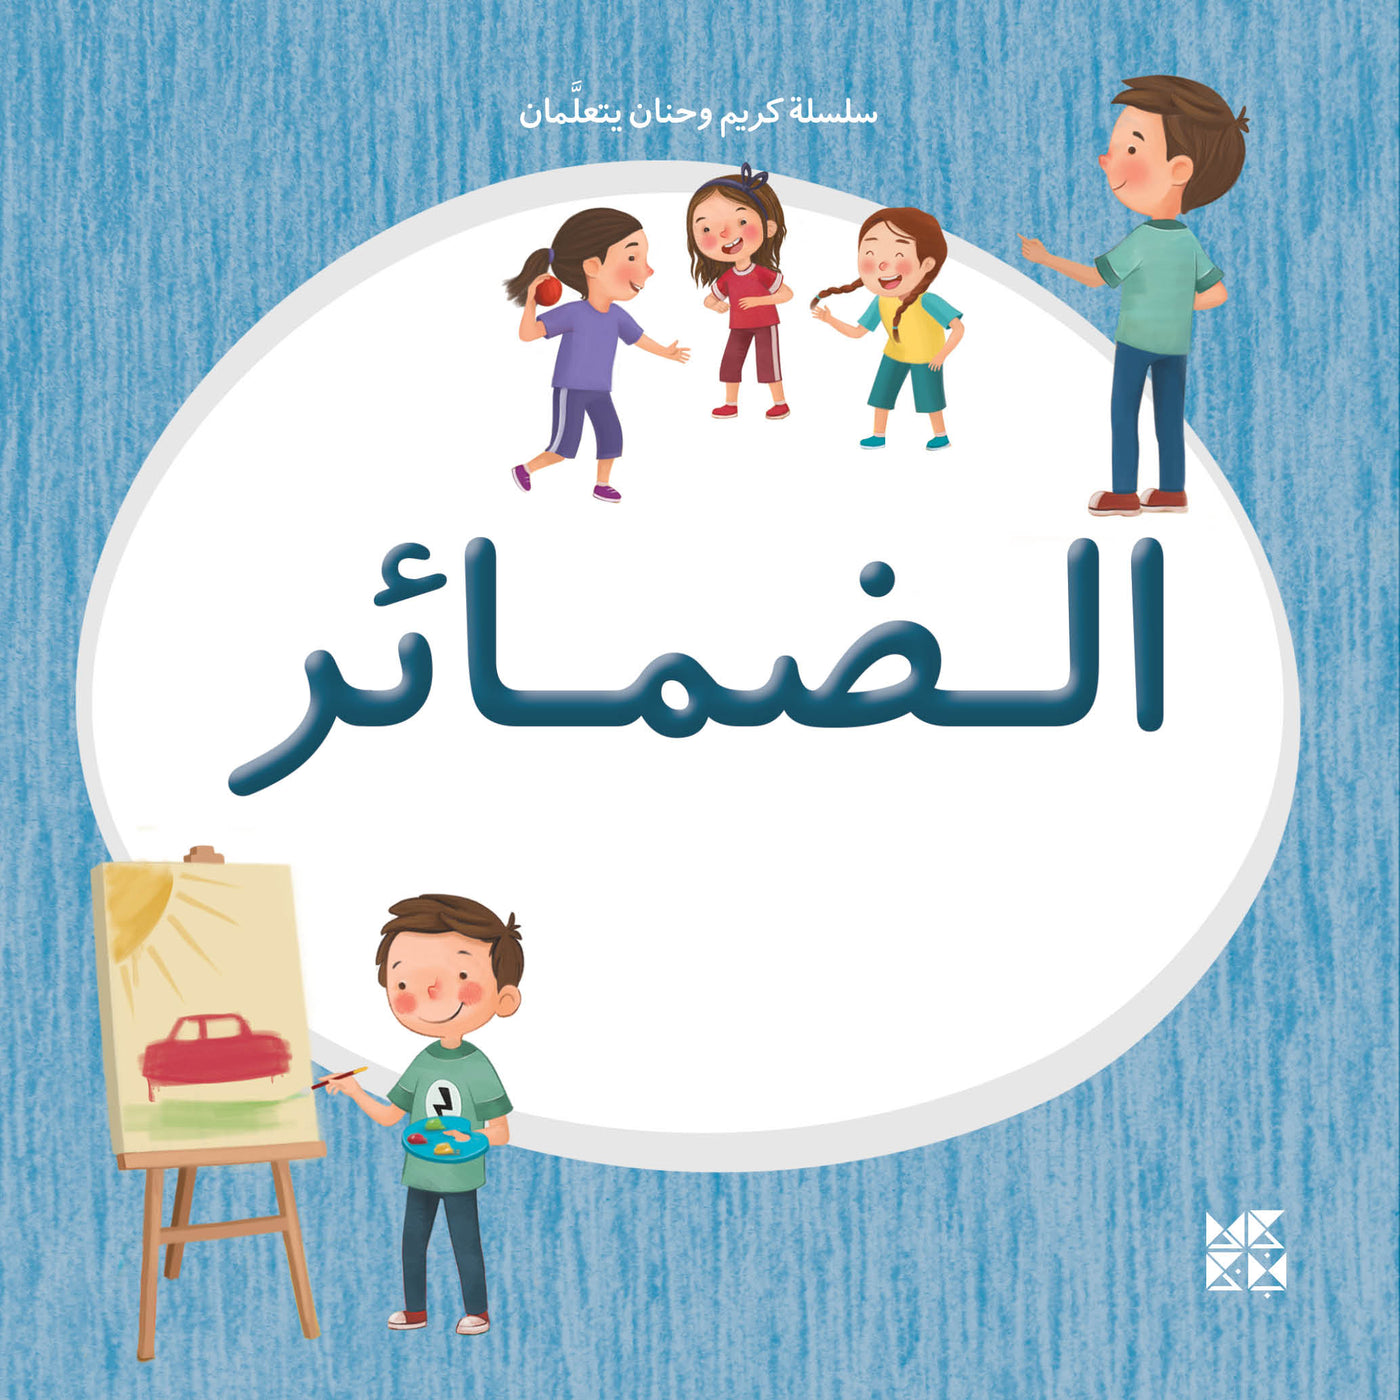 Kareem and Hanan Learning Series: Pronouns - Twin Siblings Exploring Arabic Grammar